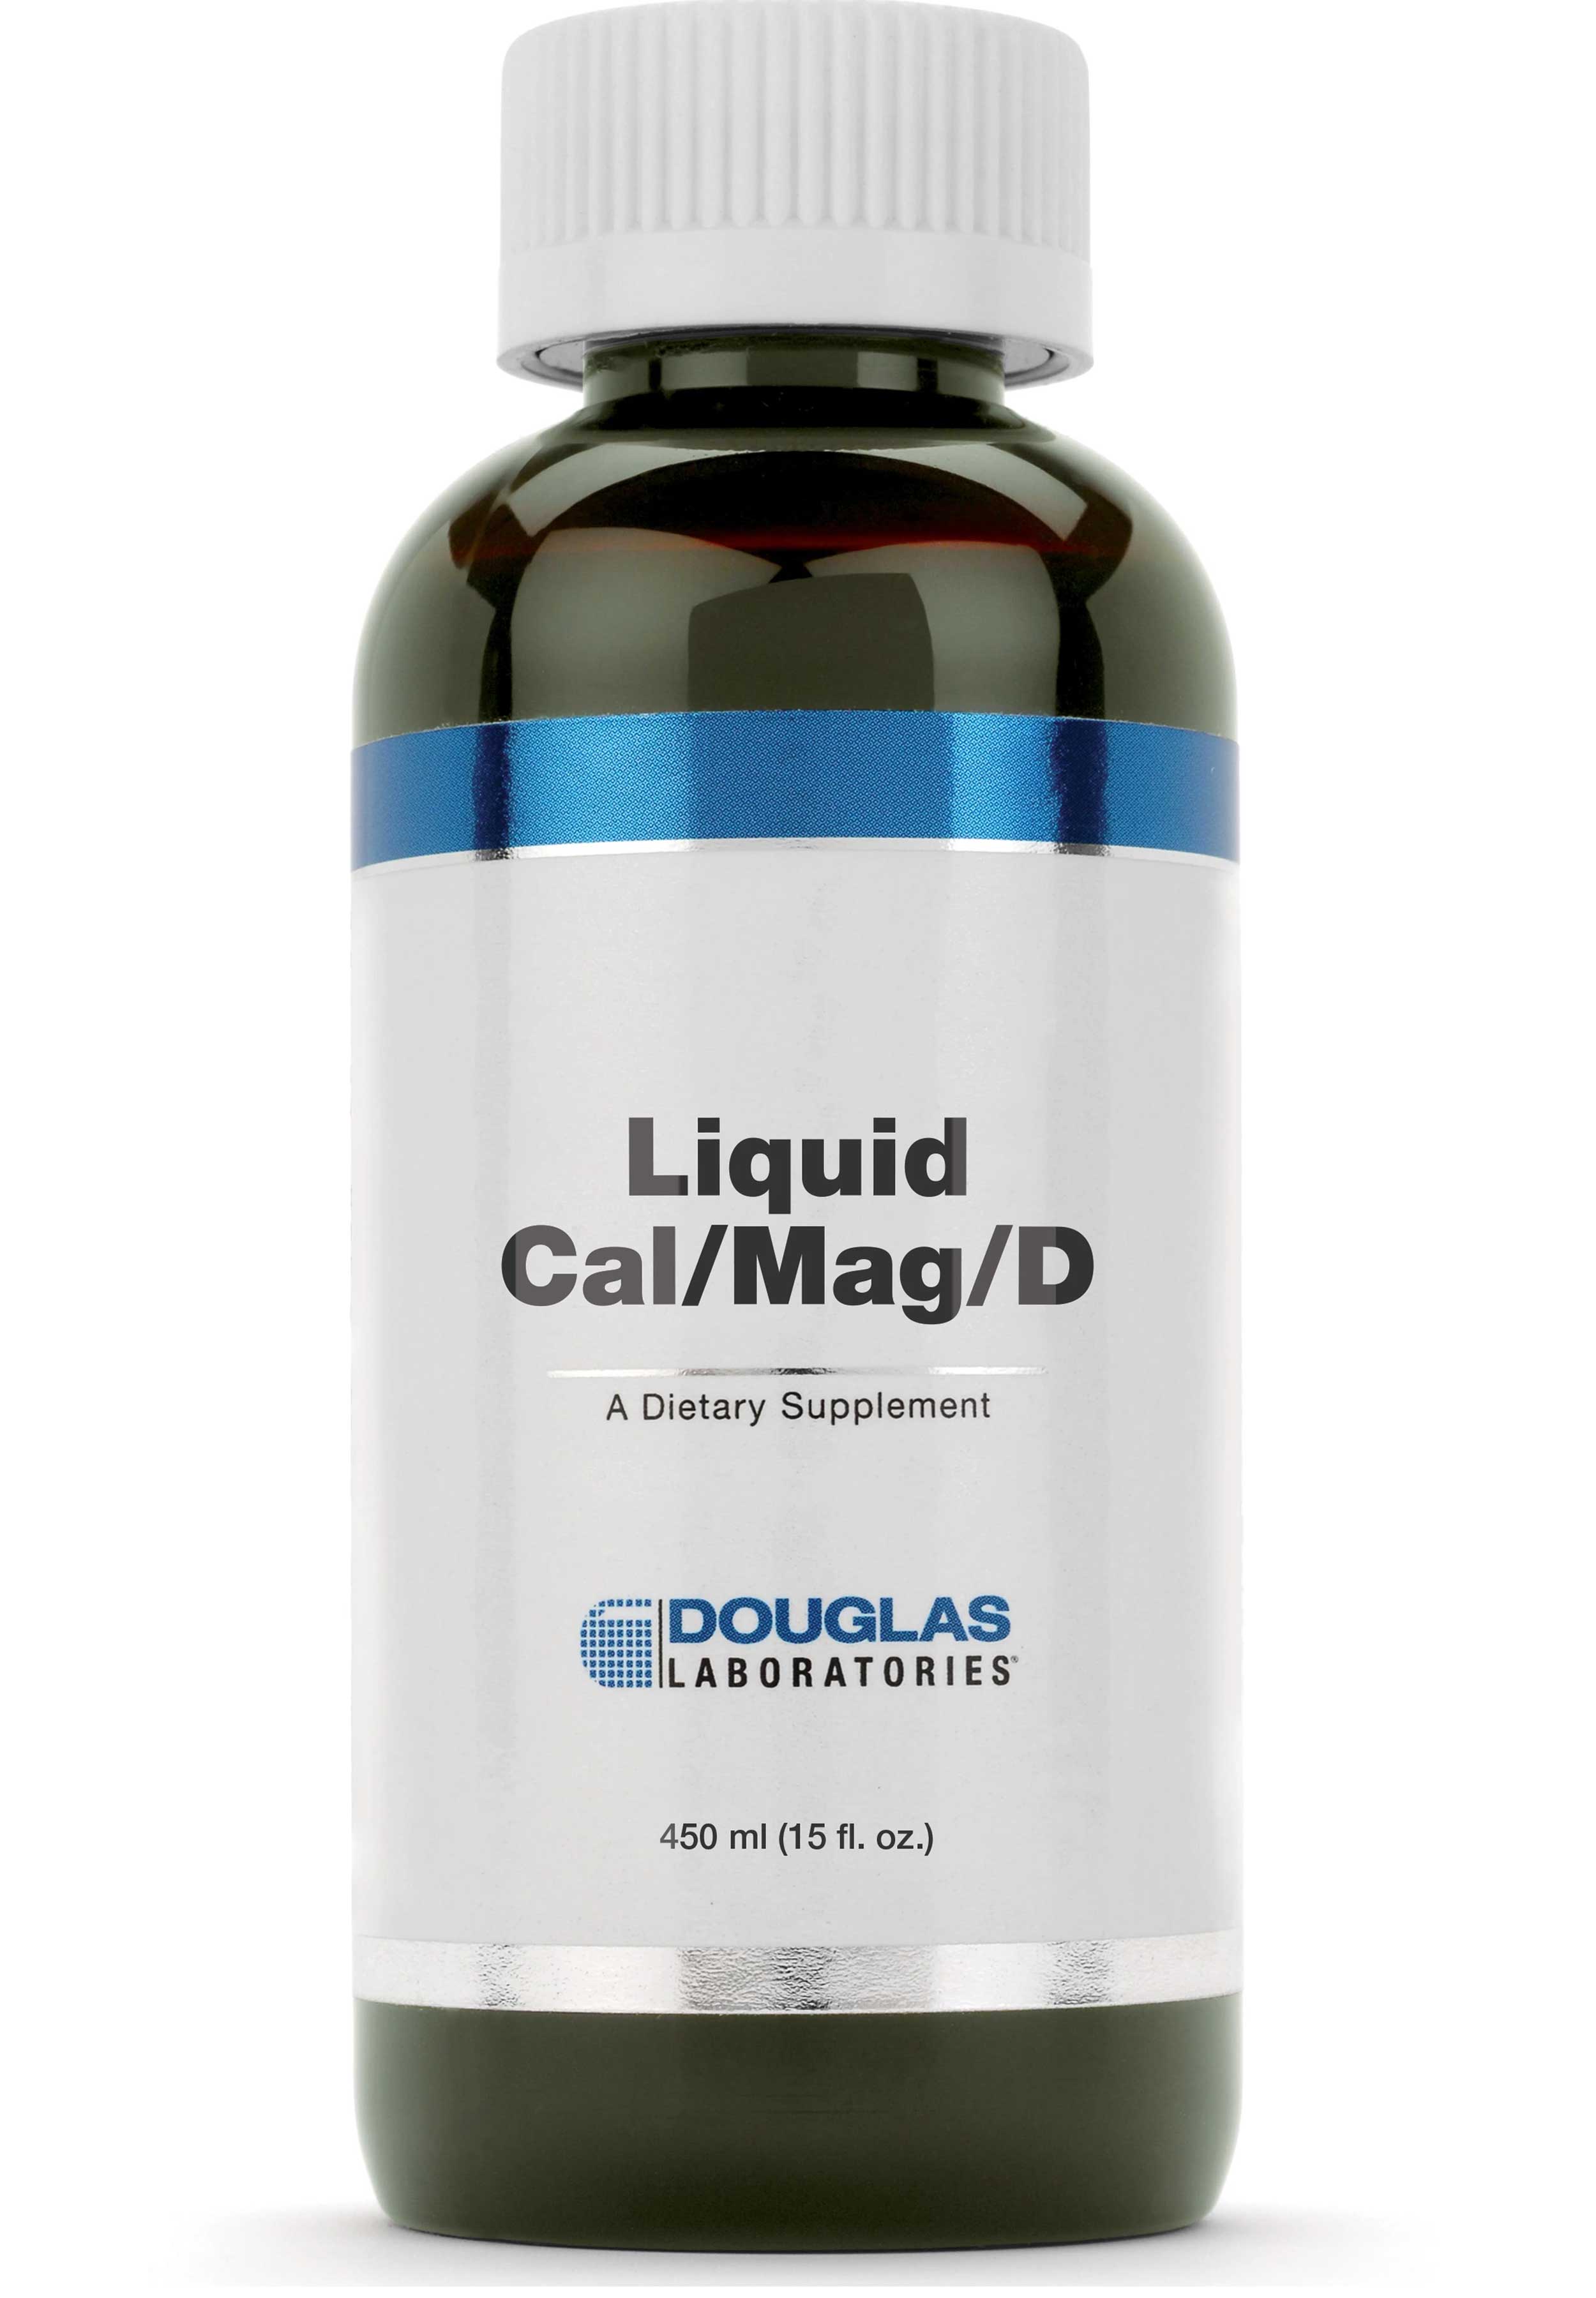 Douglas Laboratories Liquid Cal/Mag/D